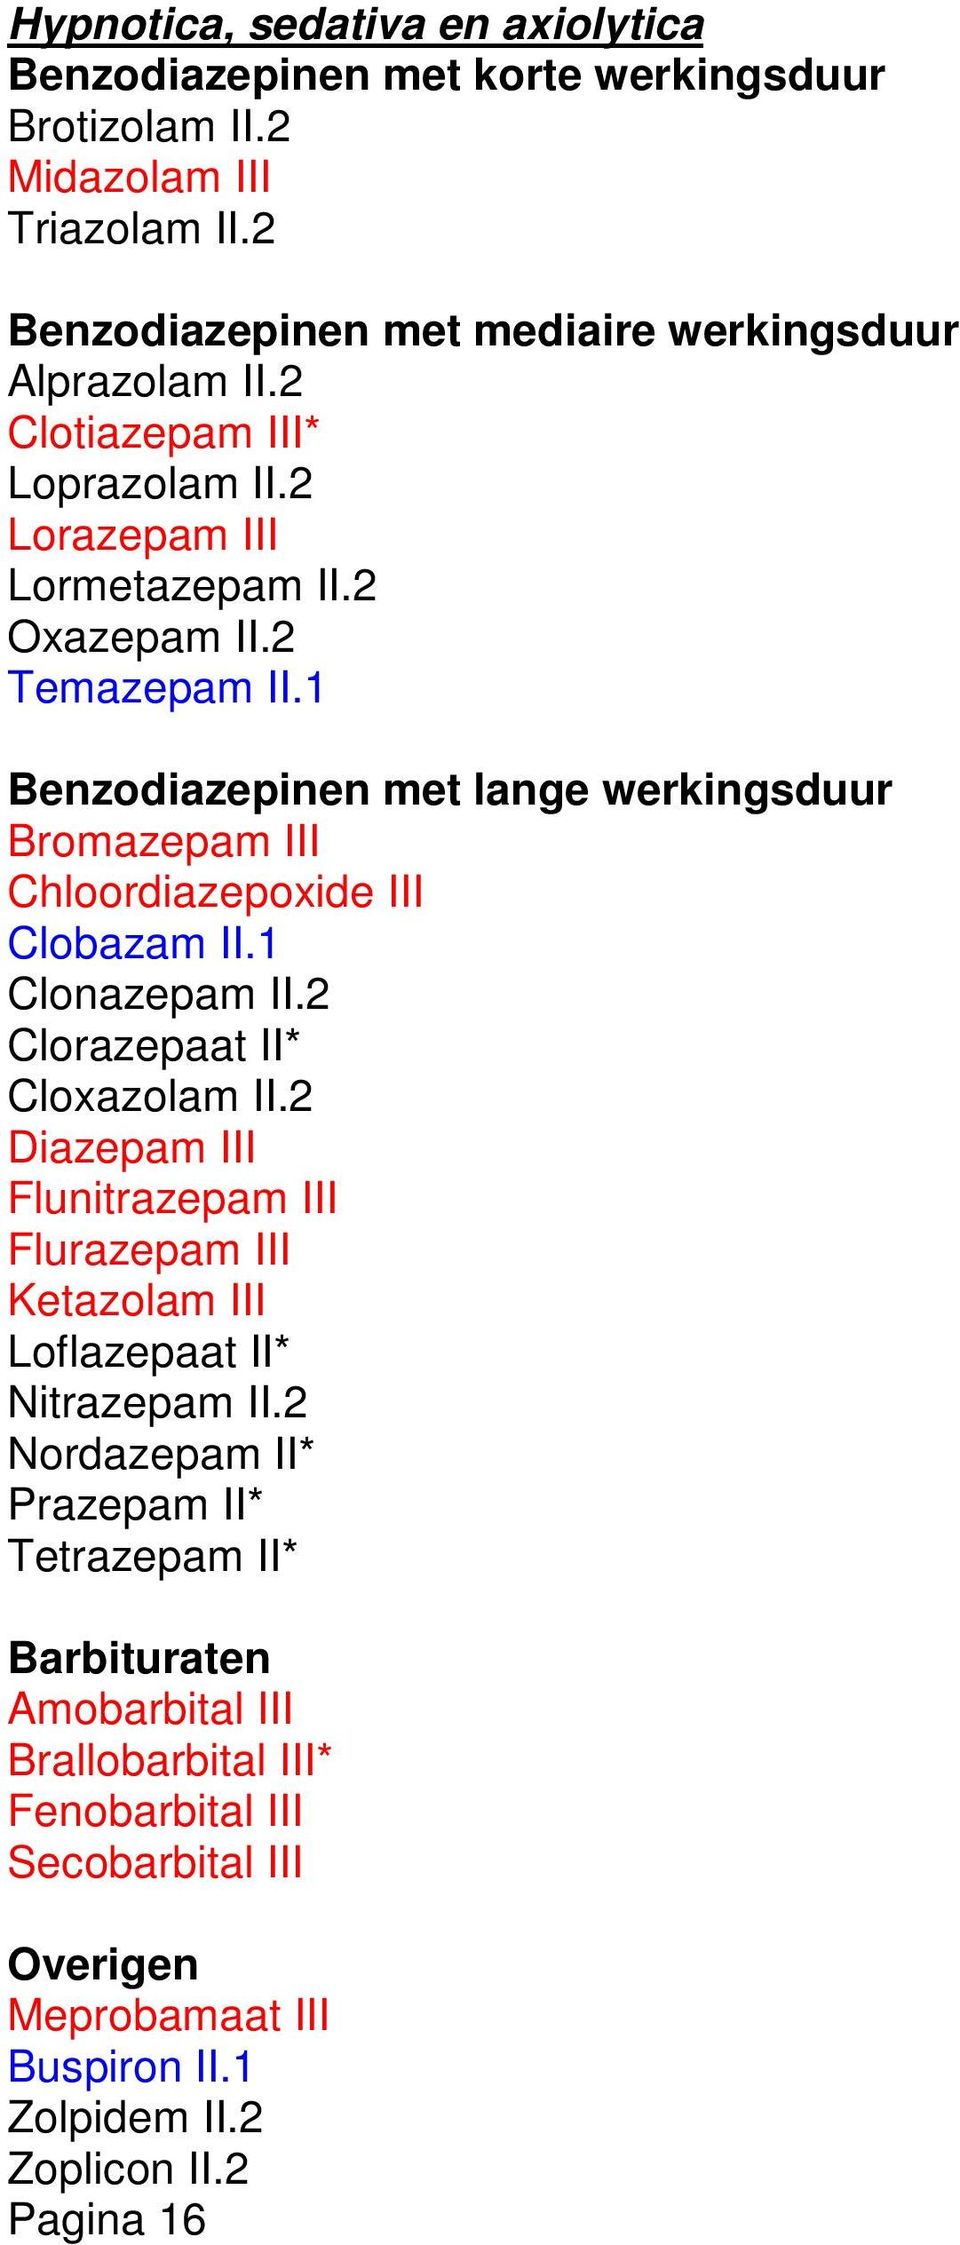 1 Benzodiazepinen met lange werkingsduur Bromazepam III Chloordiazepoxide III Clobazam II.1 Clonazepam II.2 Clorazepaat II* Cloxazolam II.